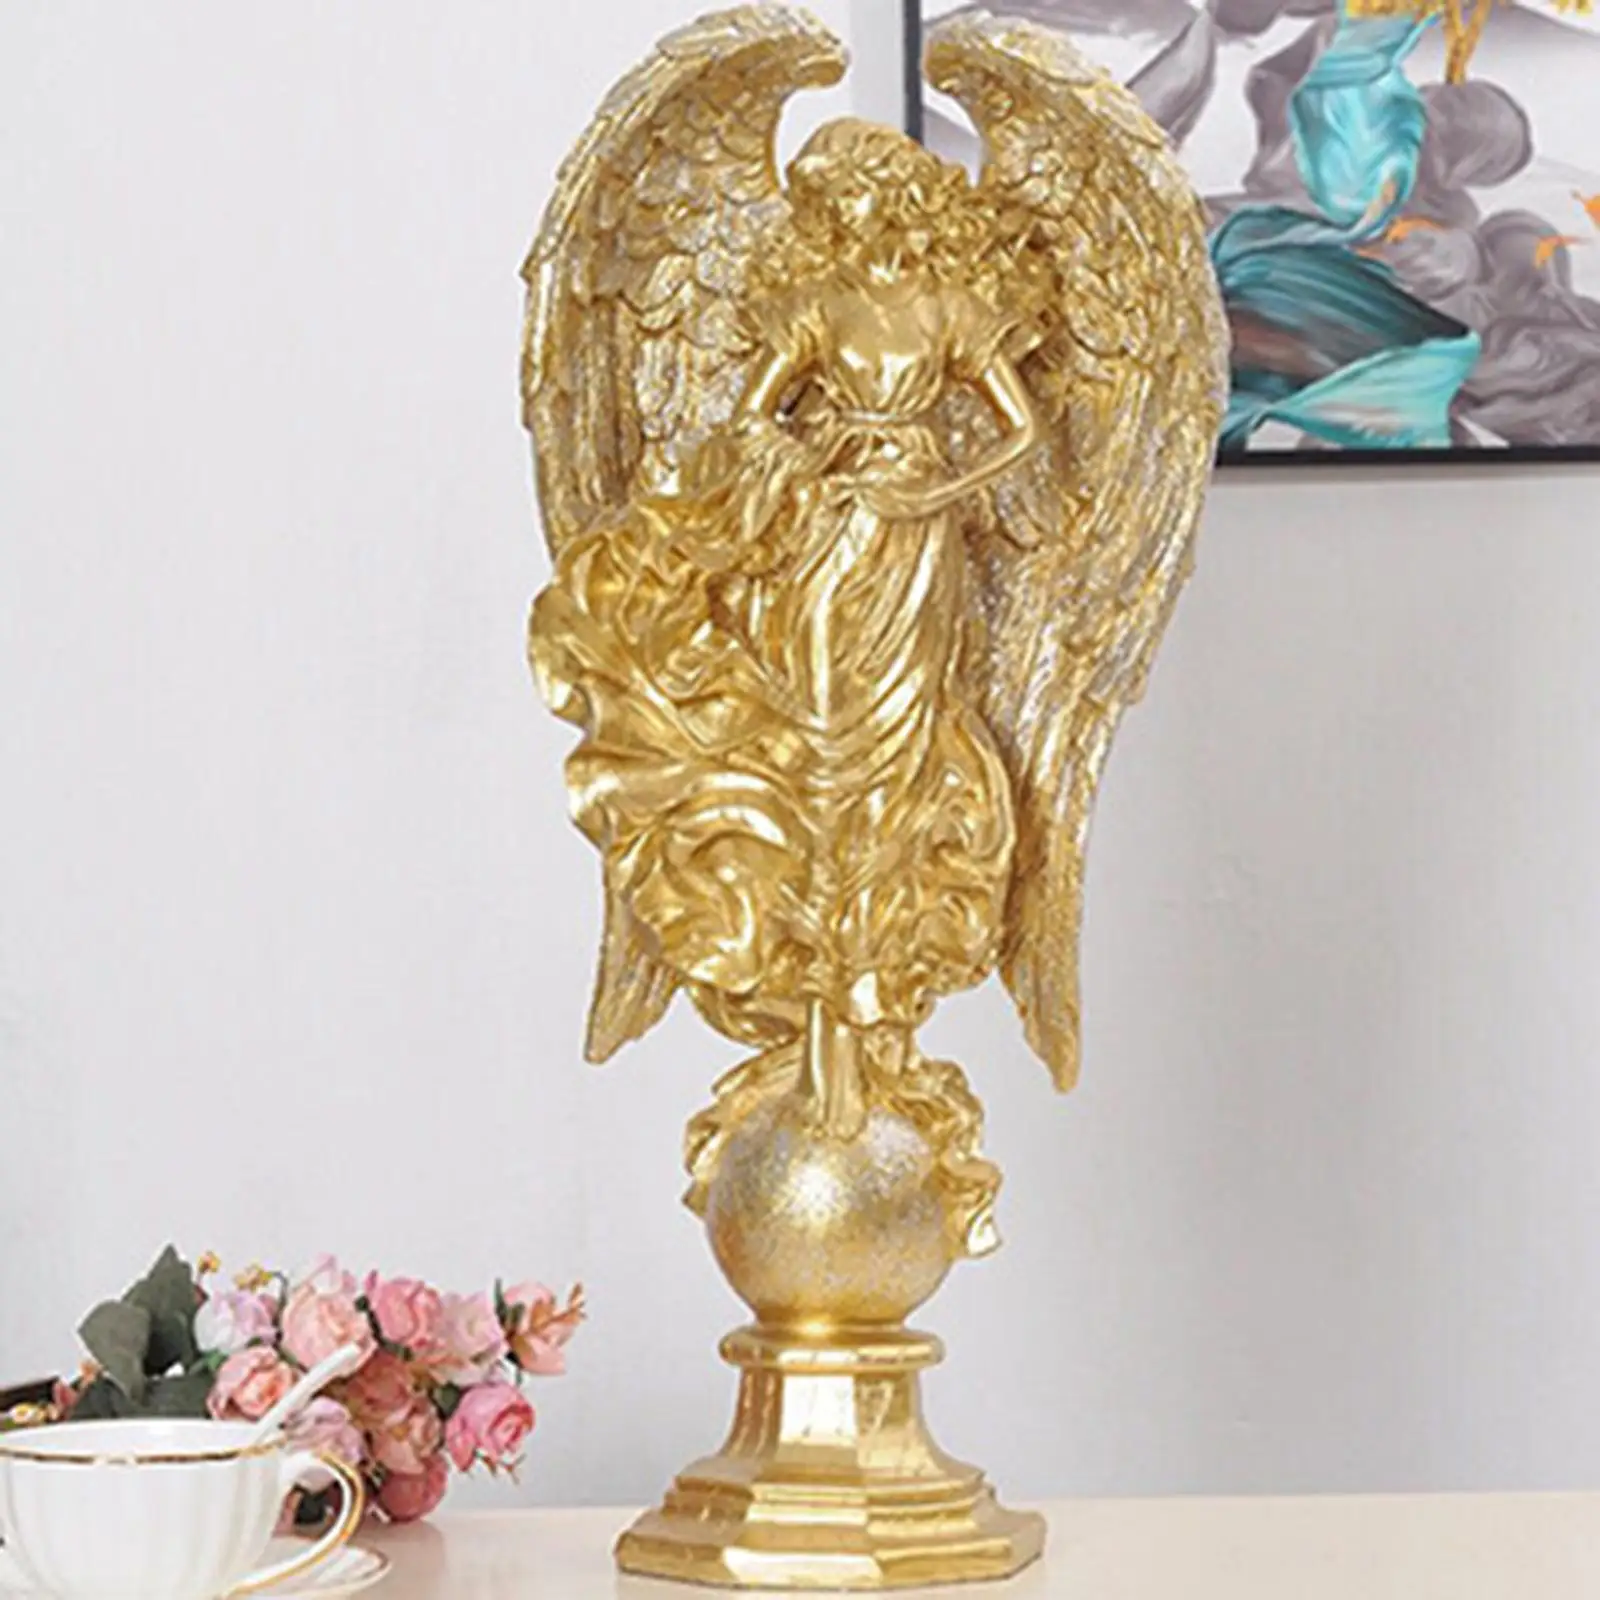 Angel Figurine Sculpture Art Crafts Desktop Garden Decoration Artwork Gift